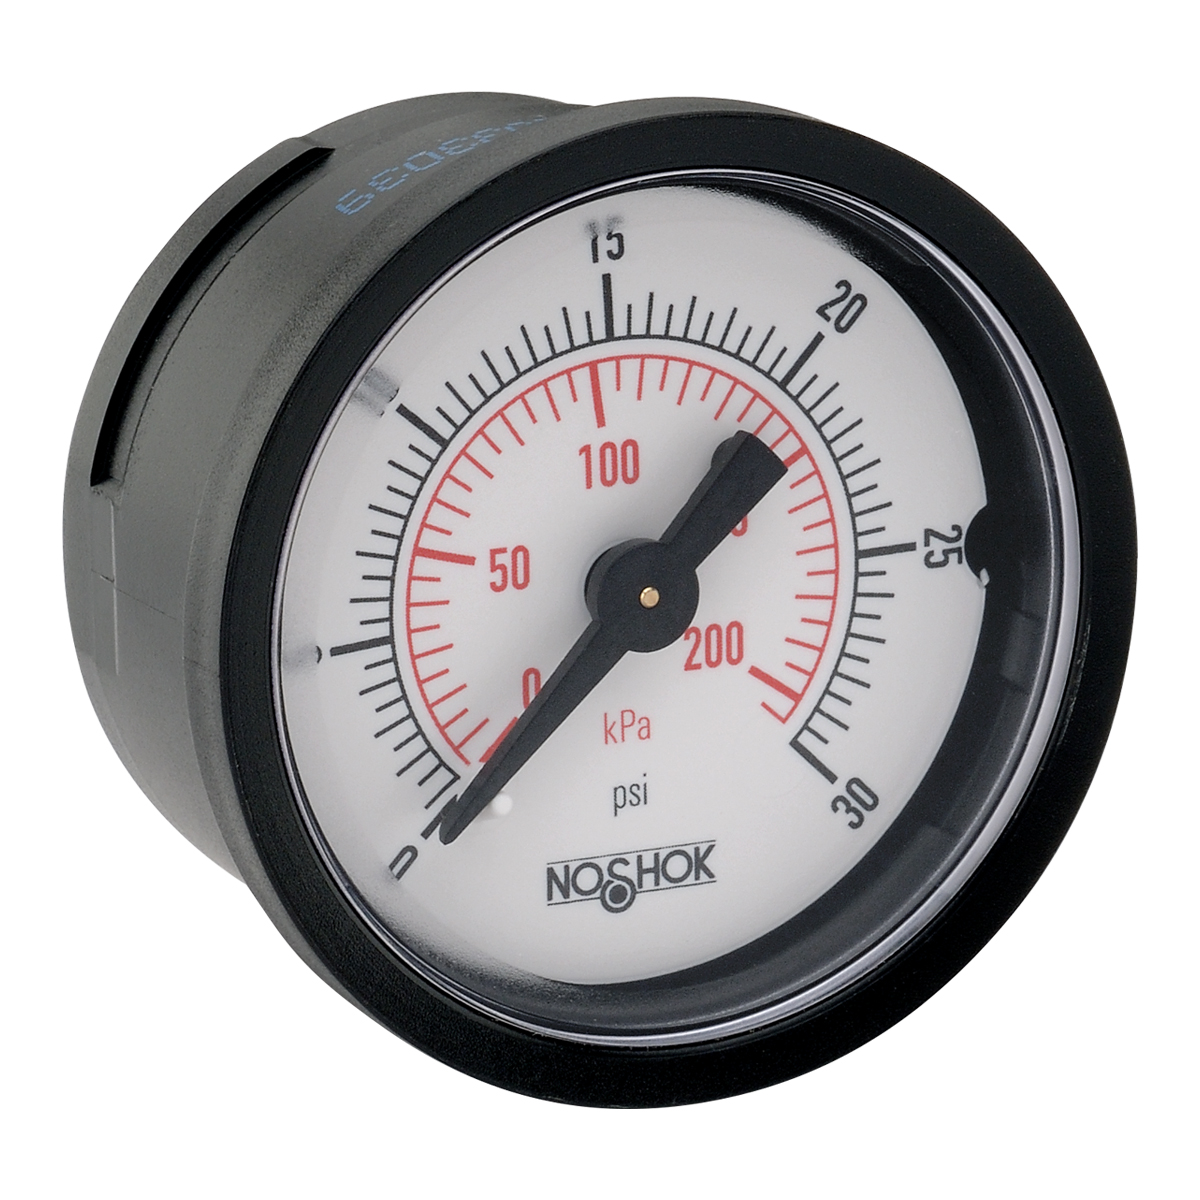 15-110-30-psi/kPa 100 Series ABS and Steel Case Dry Pressure Gauges